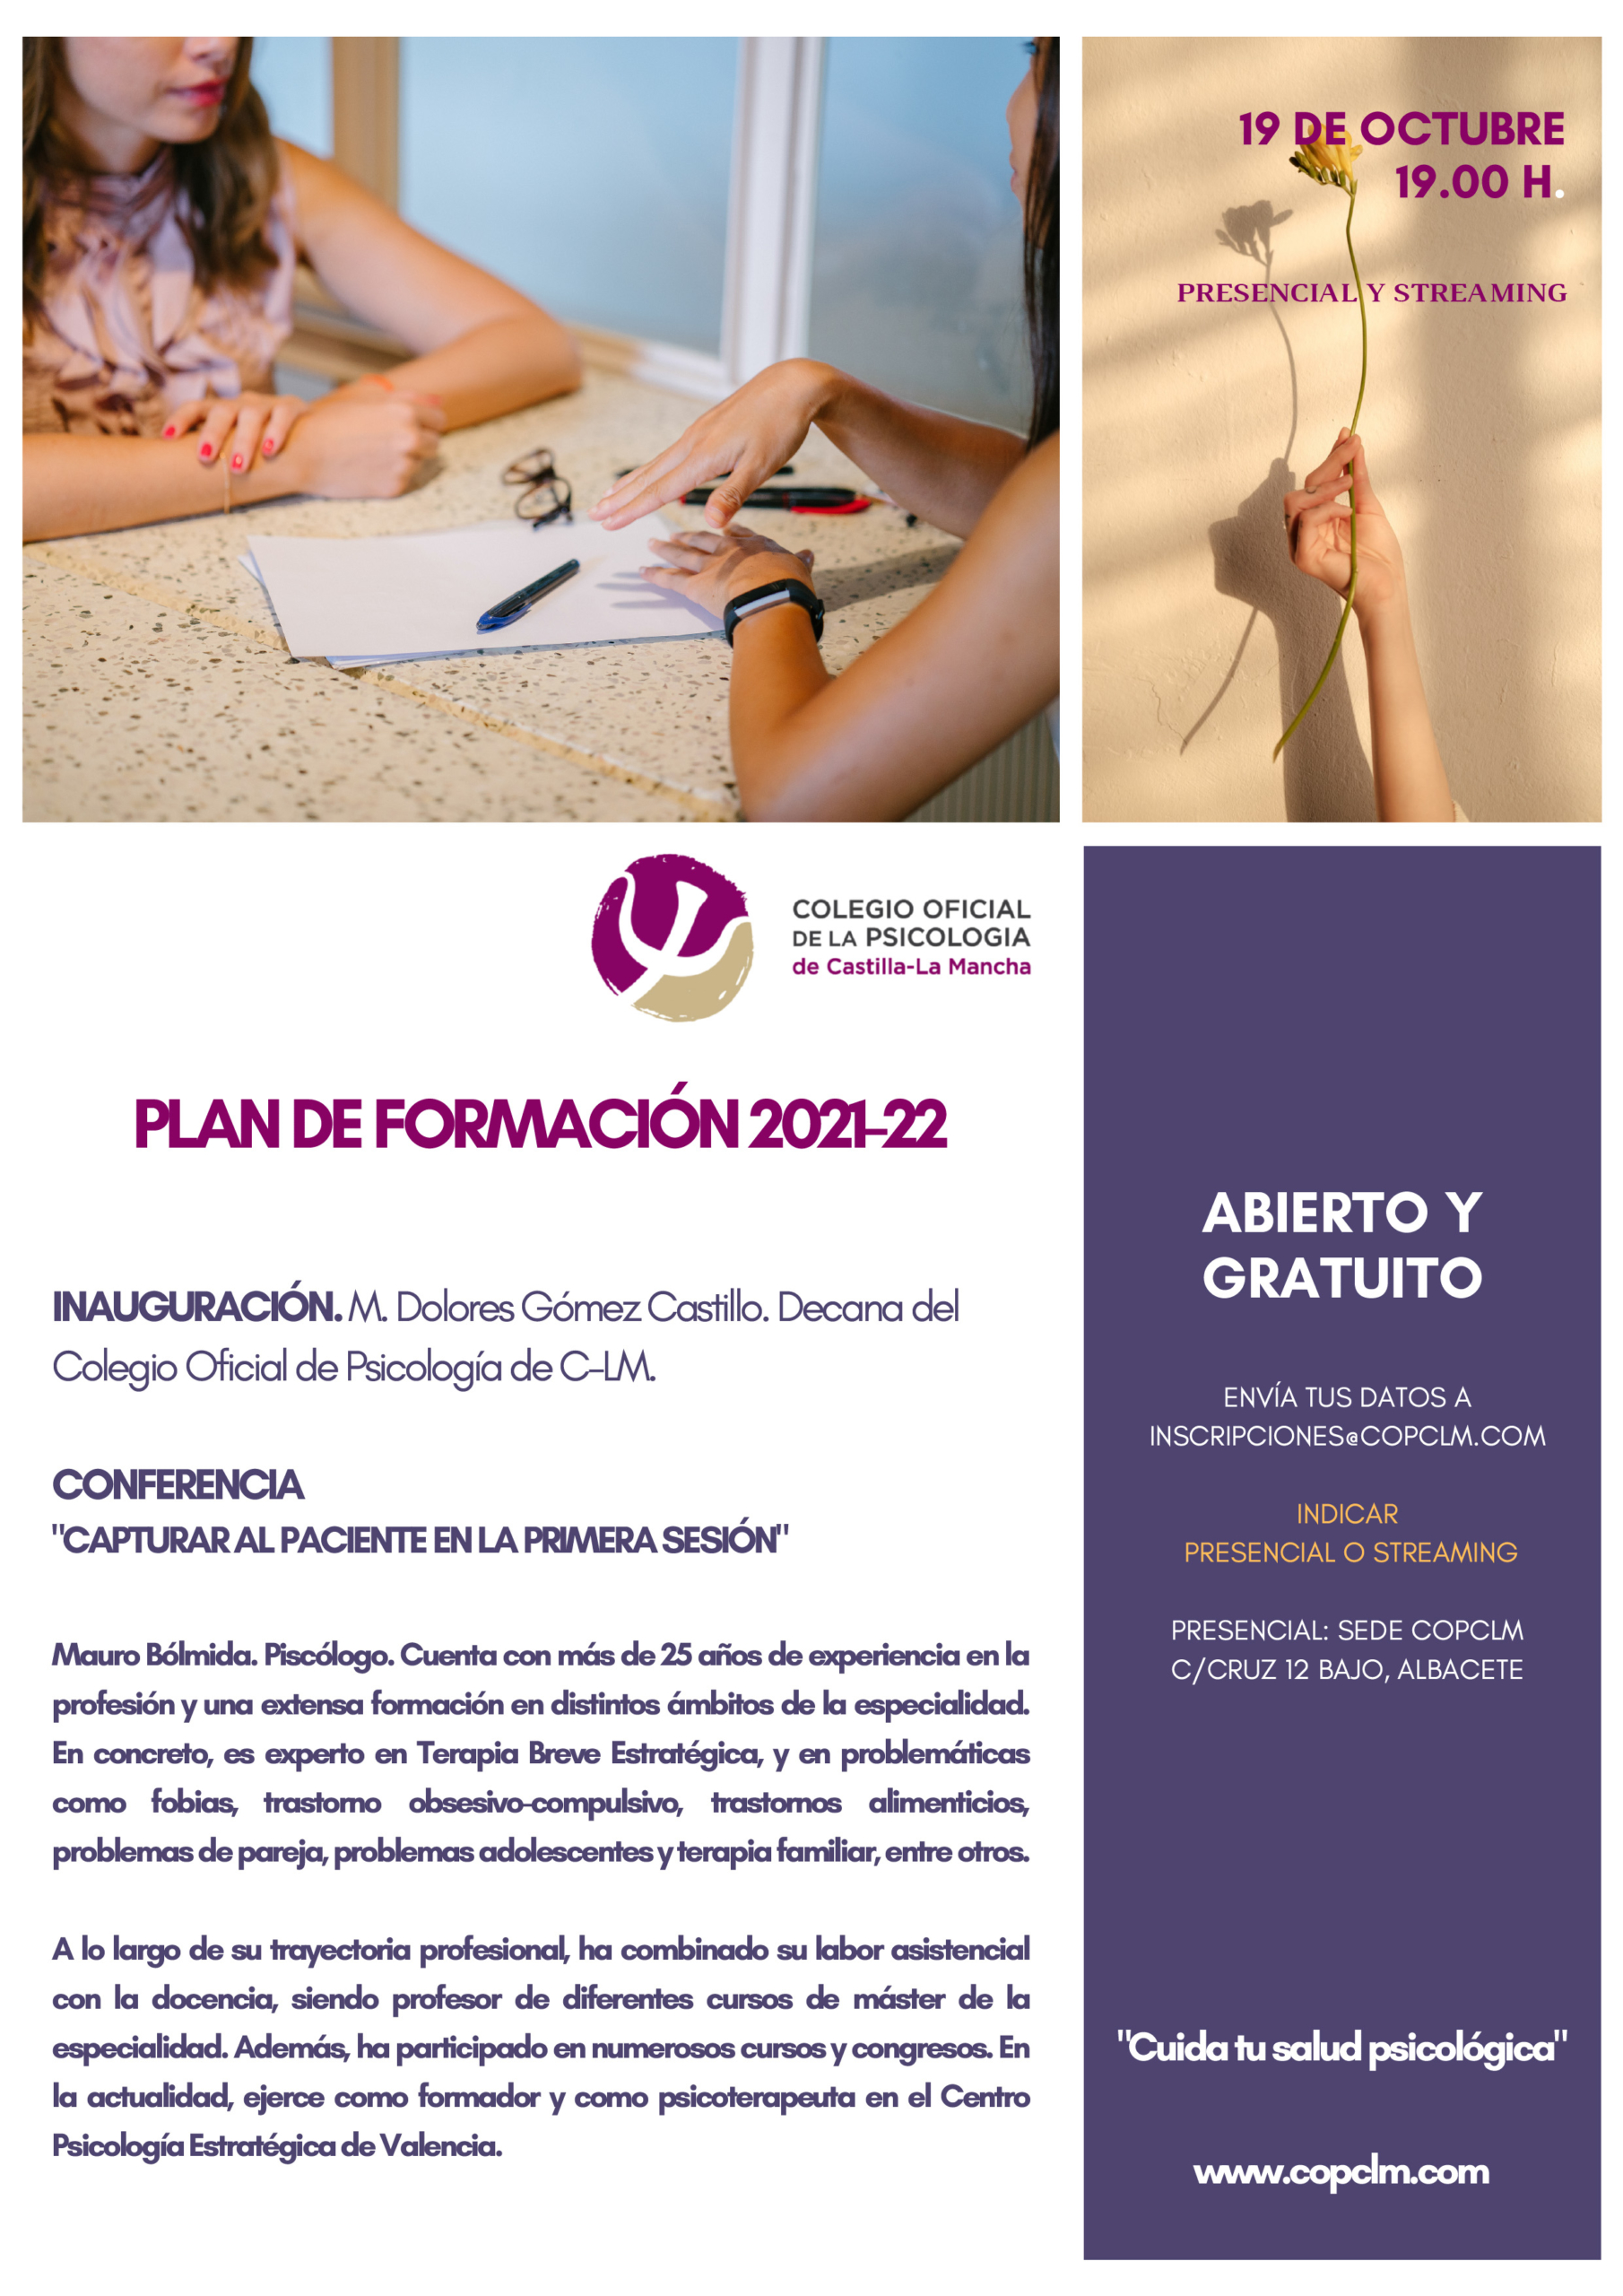 pesadilla Niño Moler 19/10/2021 – Acto de inauguración del Plan de Formación 2021/2022 del  COPCLM – Colegio Oficial de la Psicología de Castilla-La Mancha